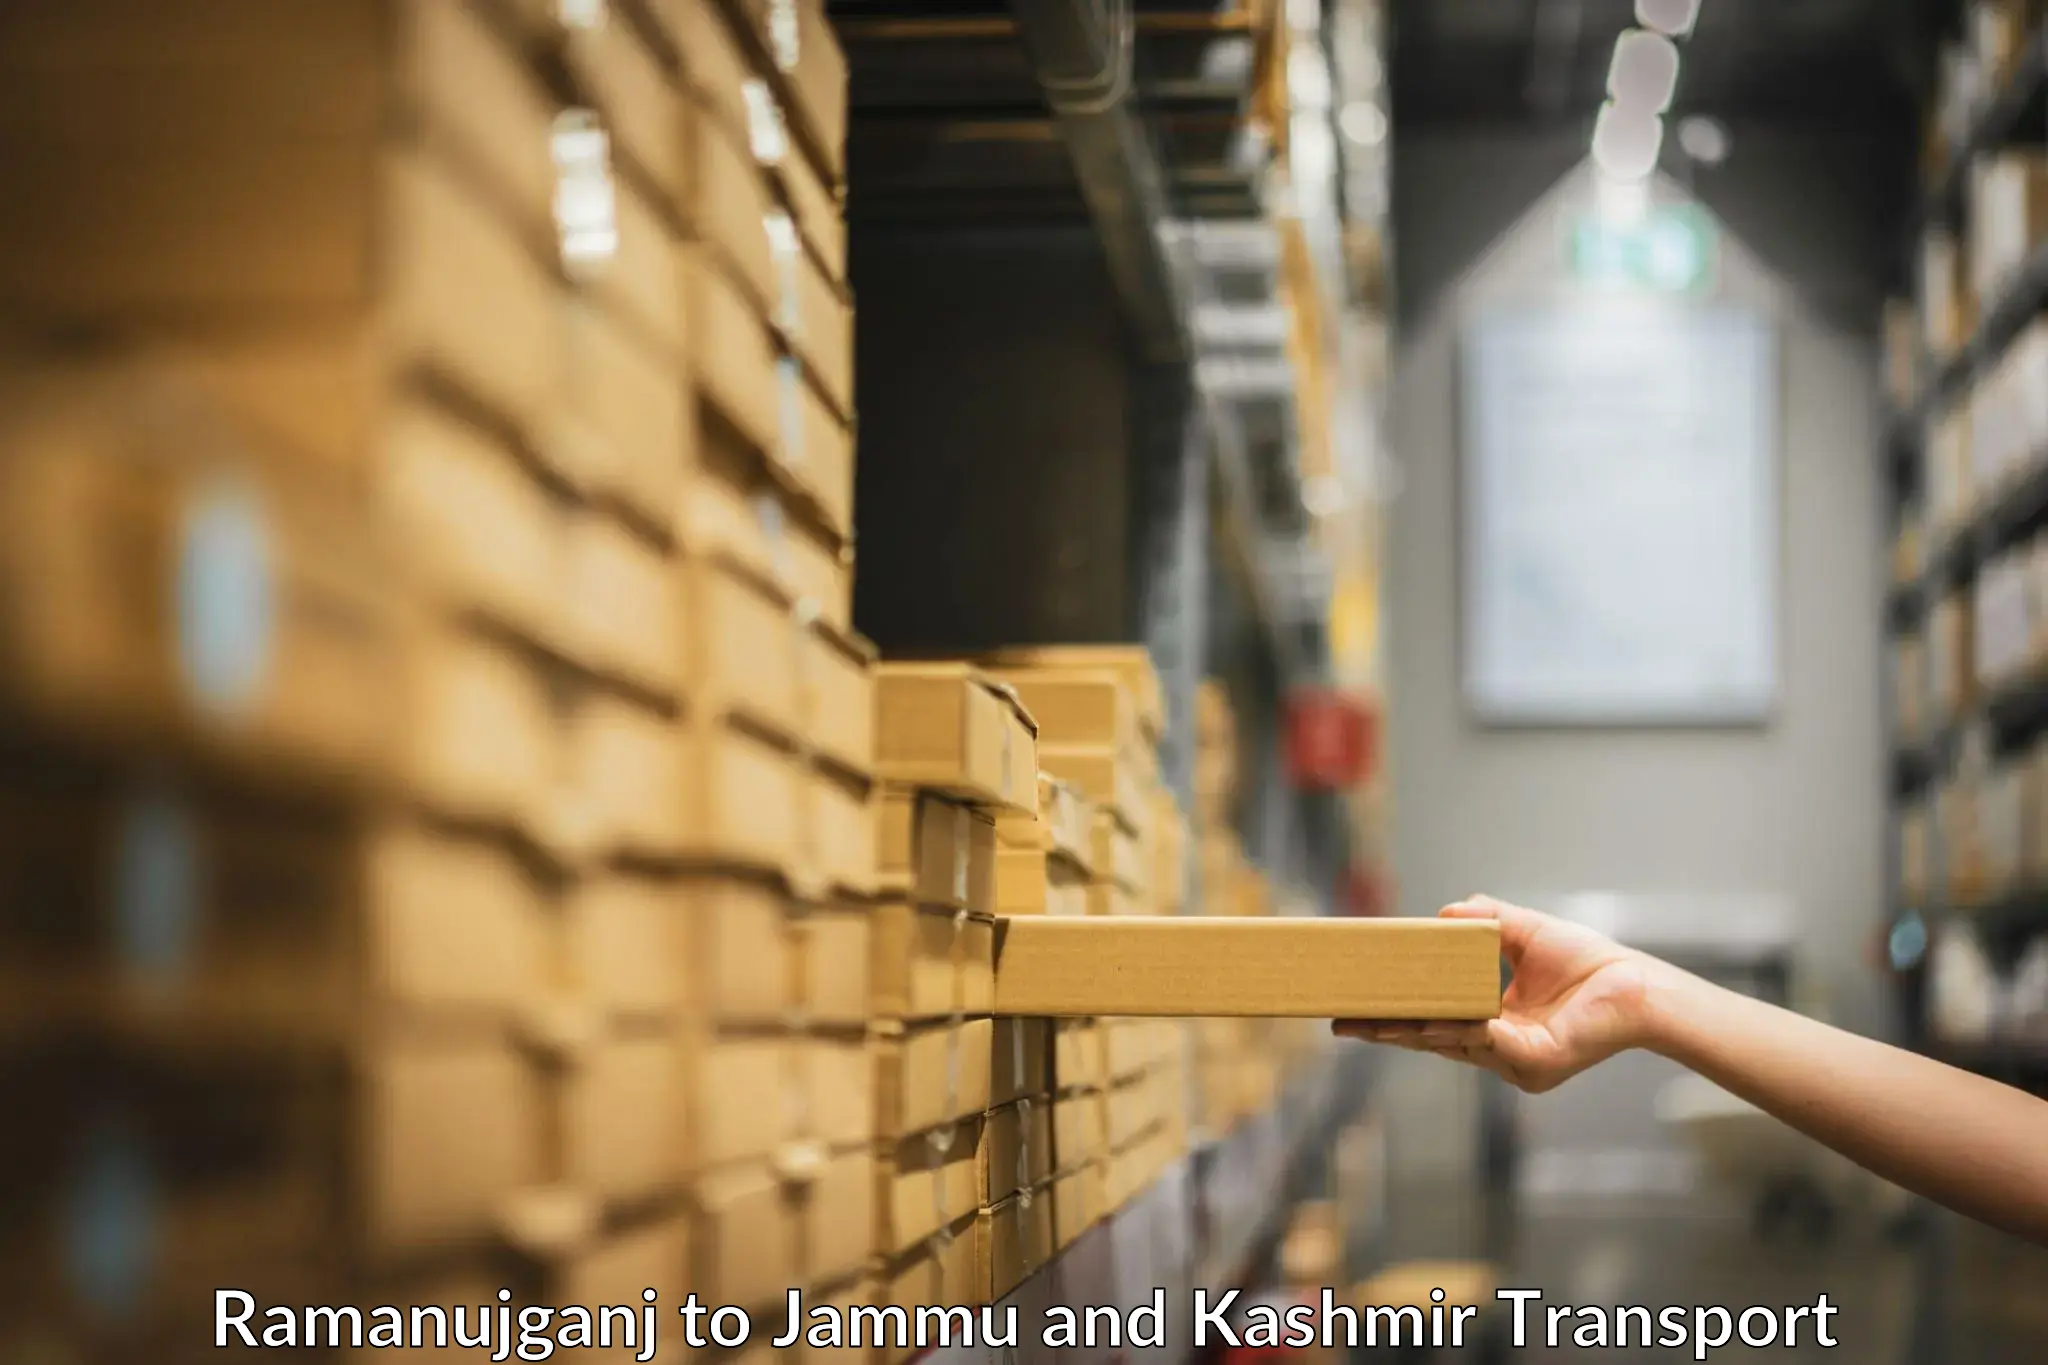 Domestic transport services Ramanujganj to Jammu and Kashmir